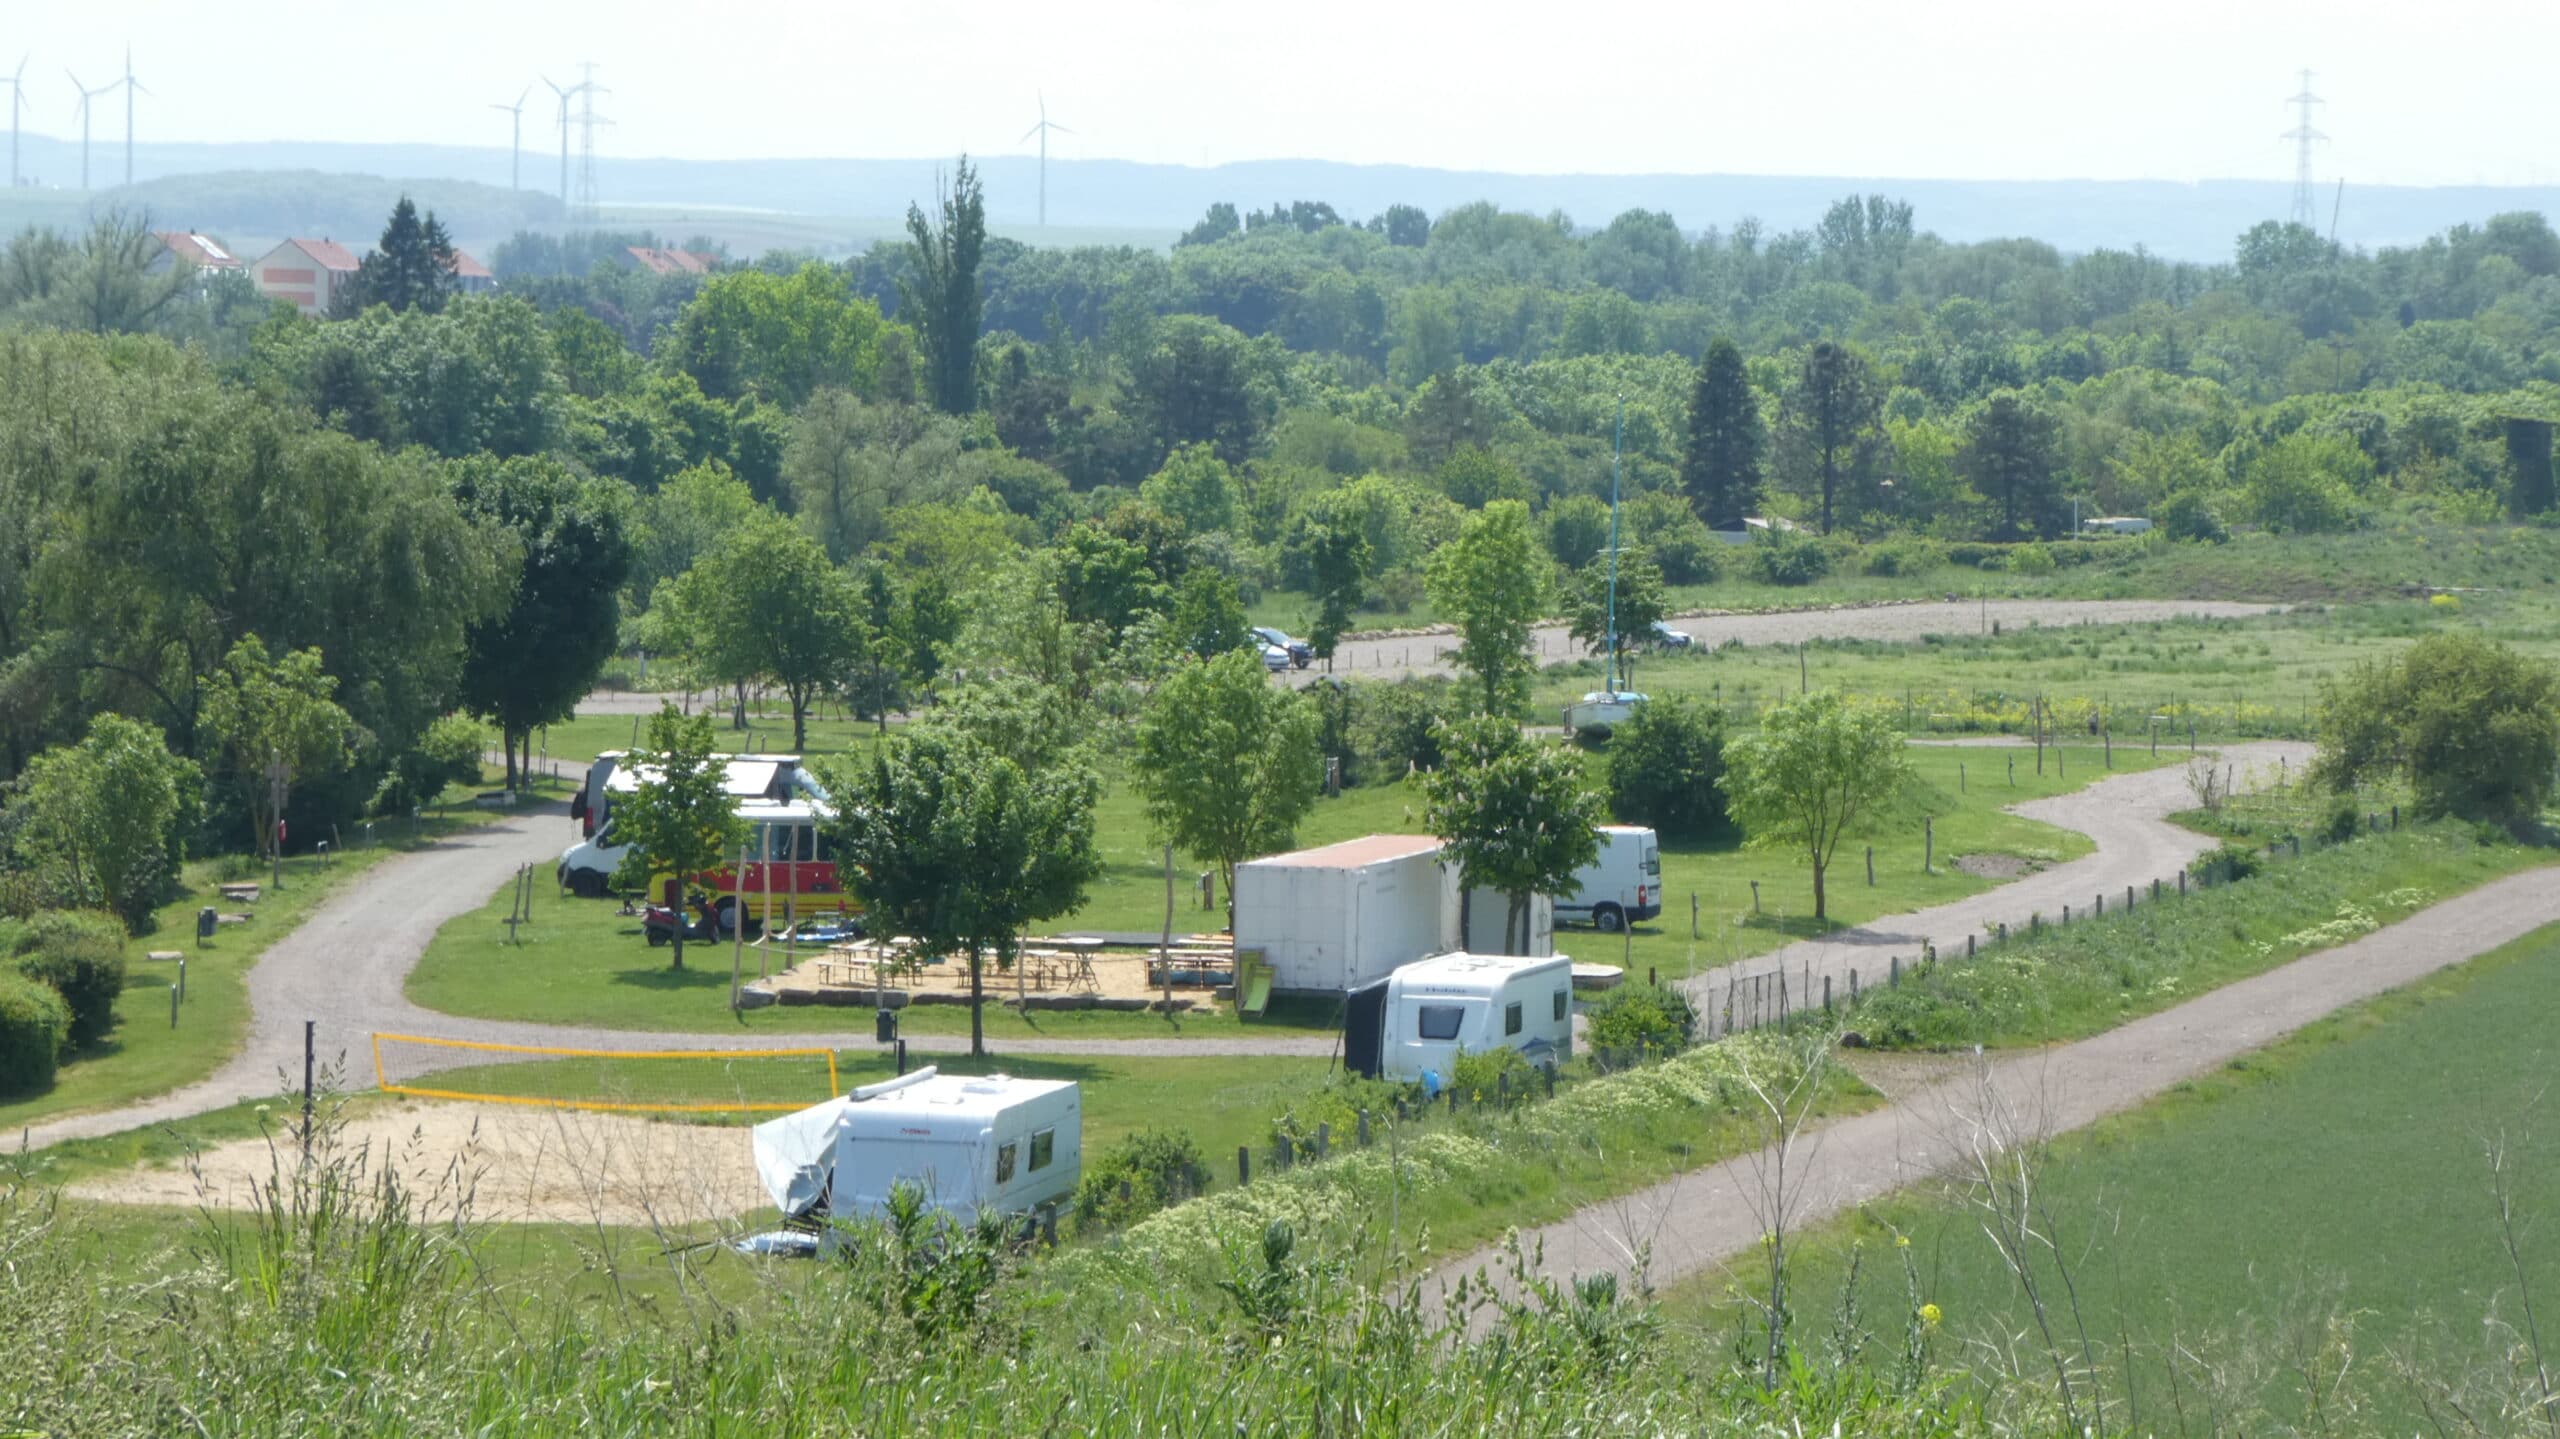 Blick auf den Campingplatz Thürkies am Alperstedter See bei Erfurt